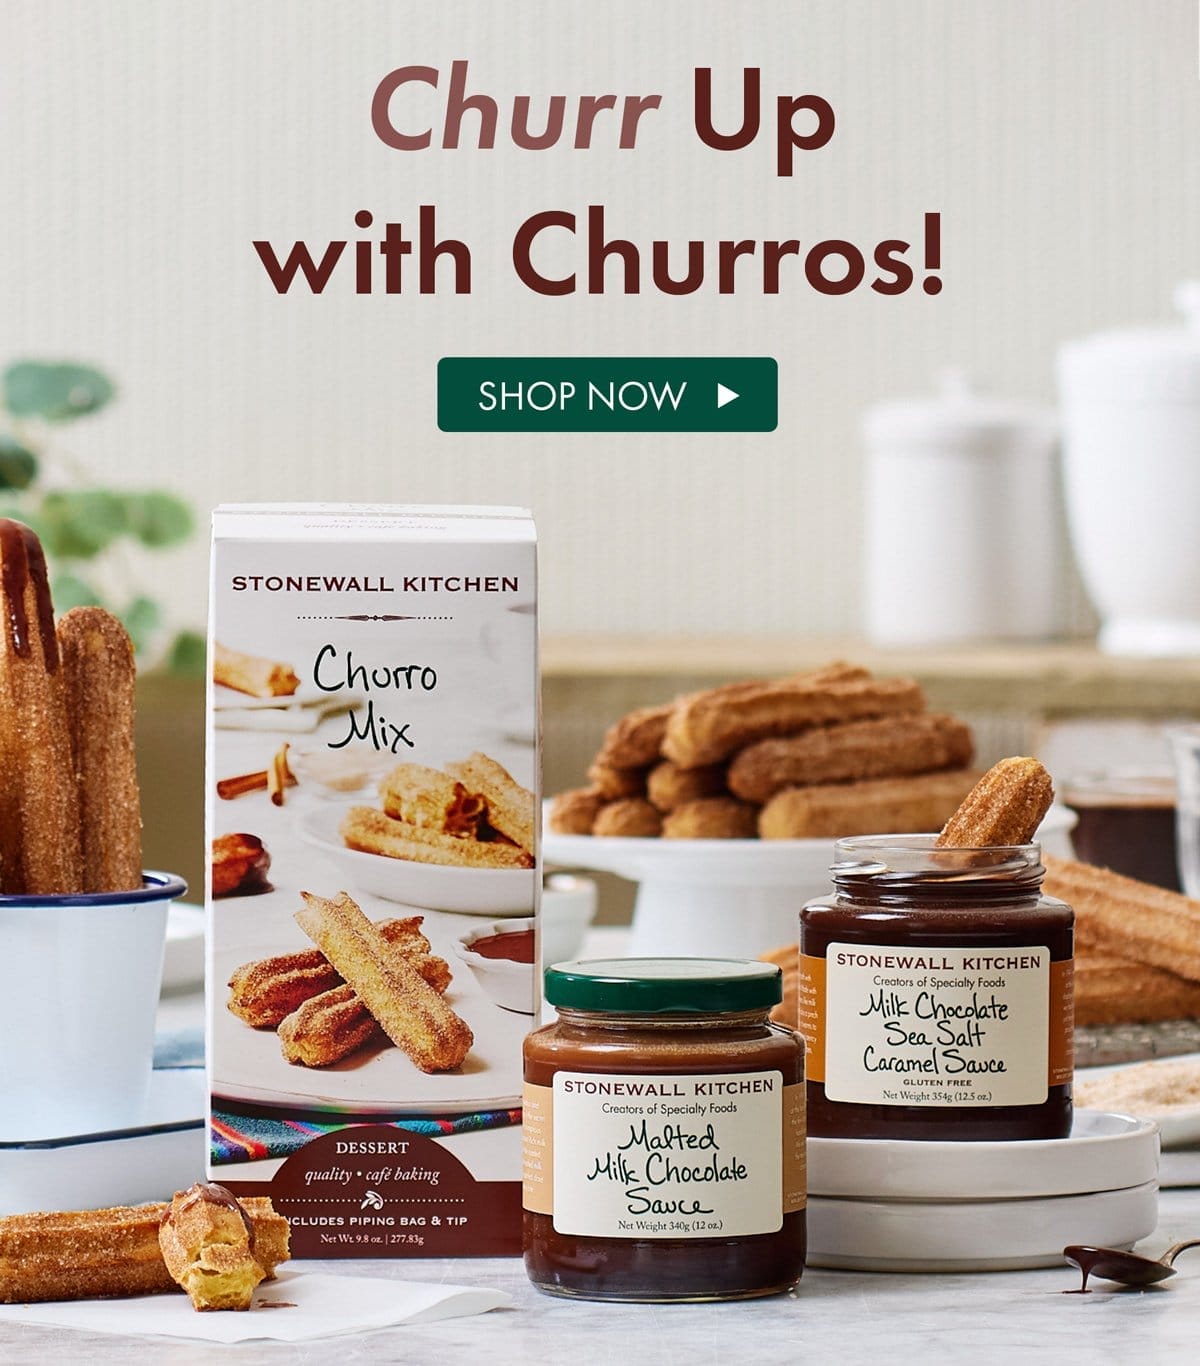 Churr Up with Churros! - Shop Now